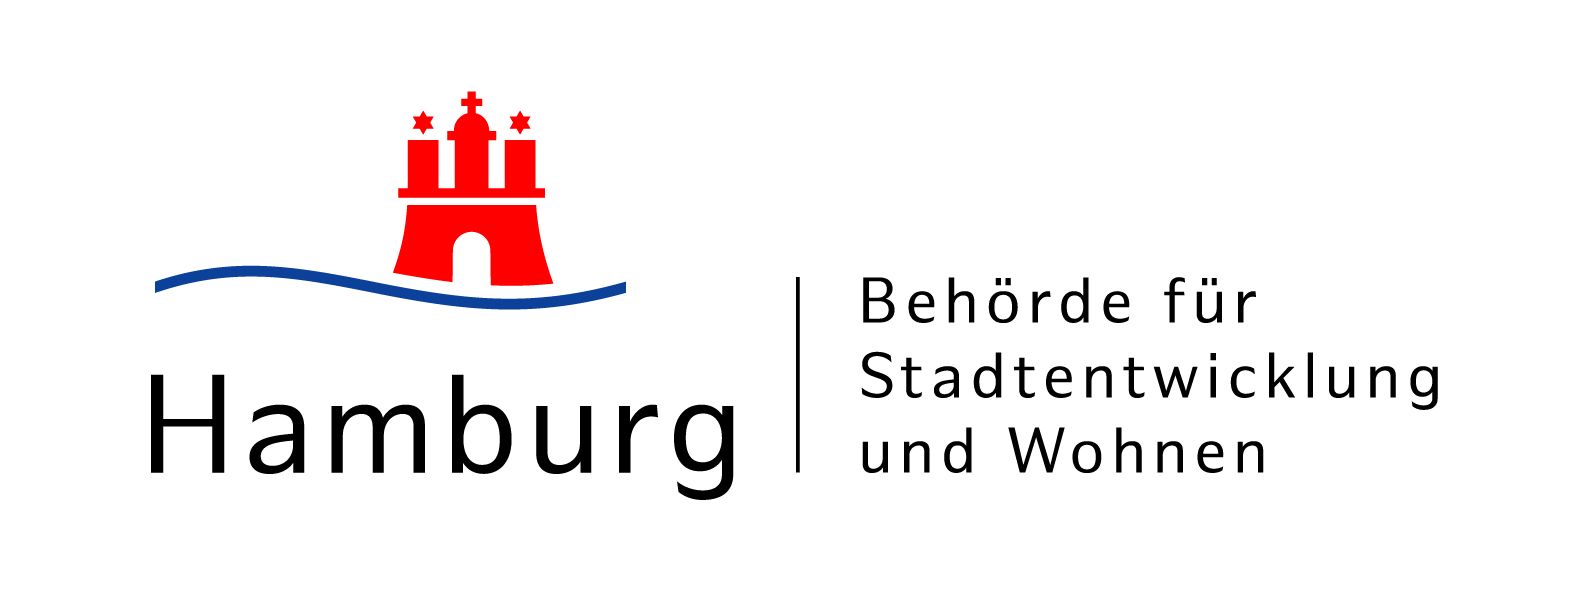 Behörde für Stadtentwicklung und Wohnen Hamburg